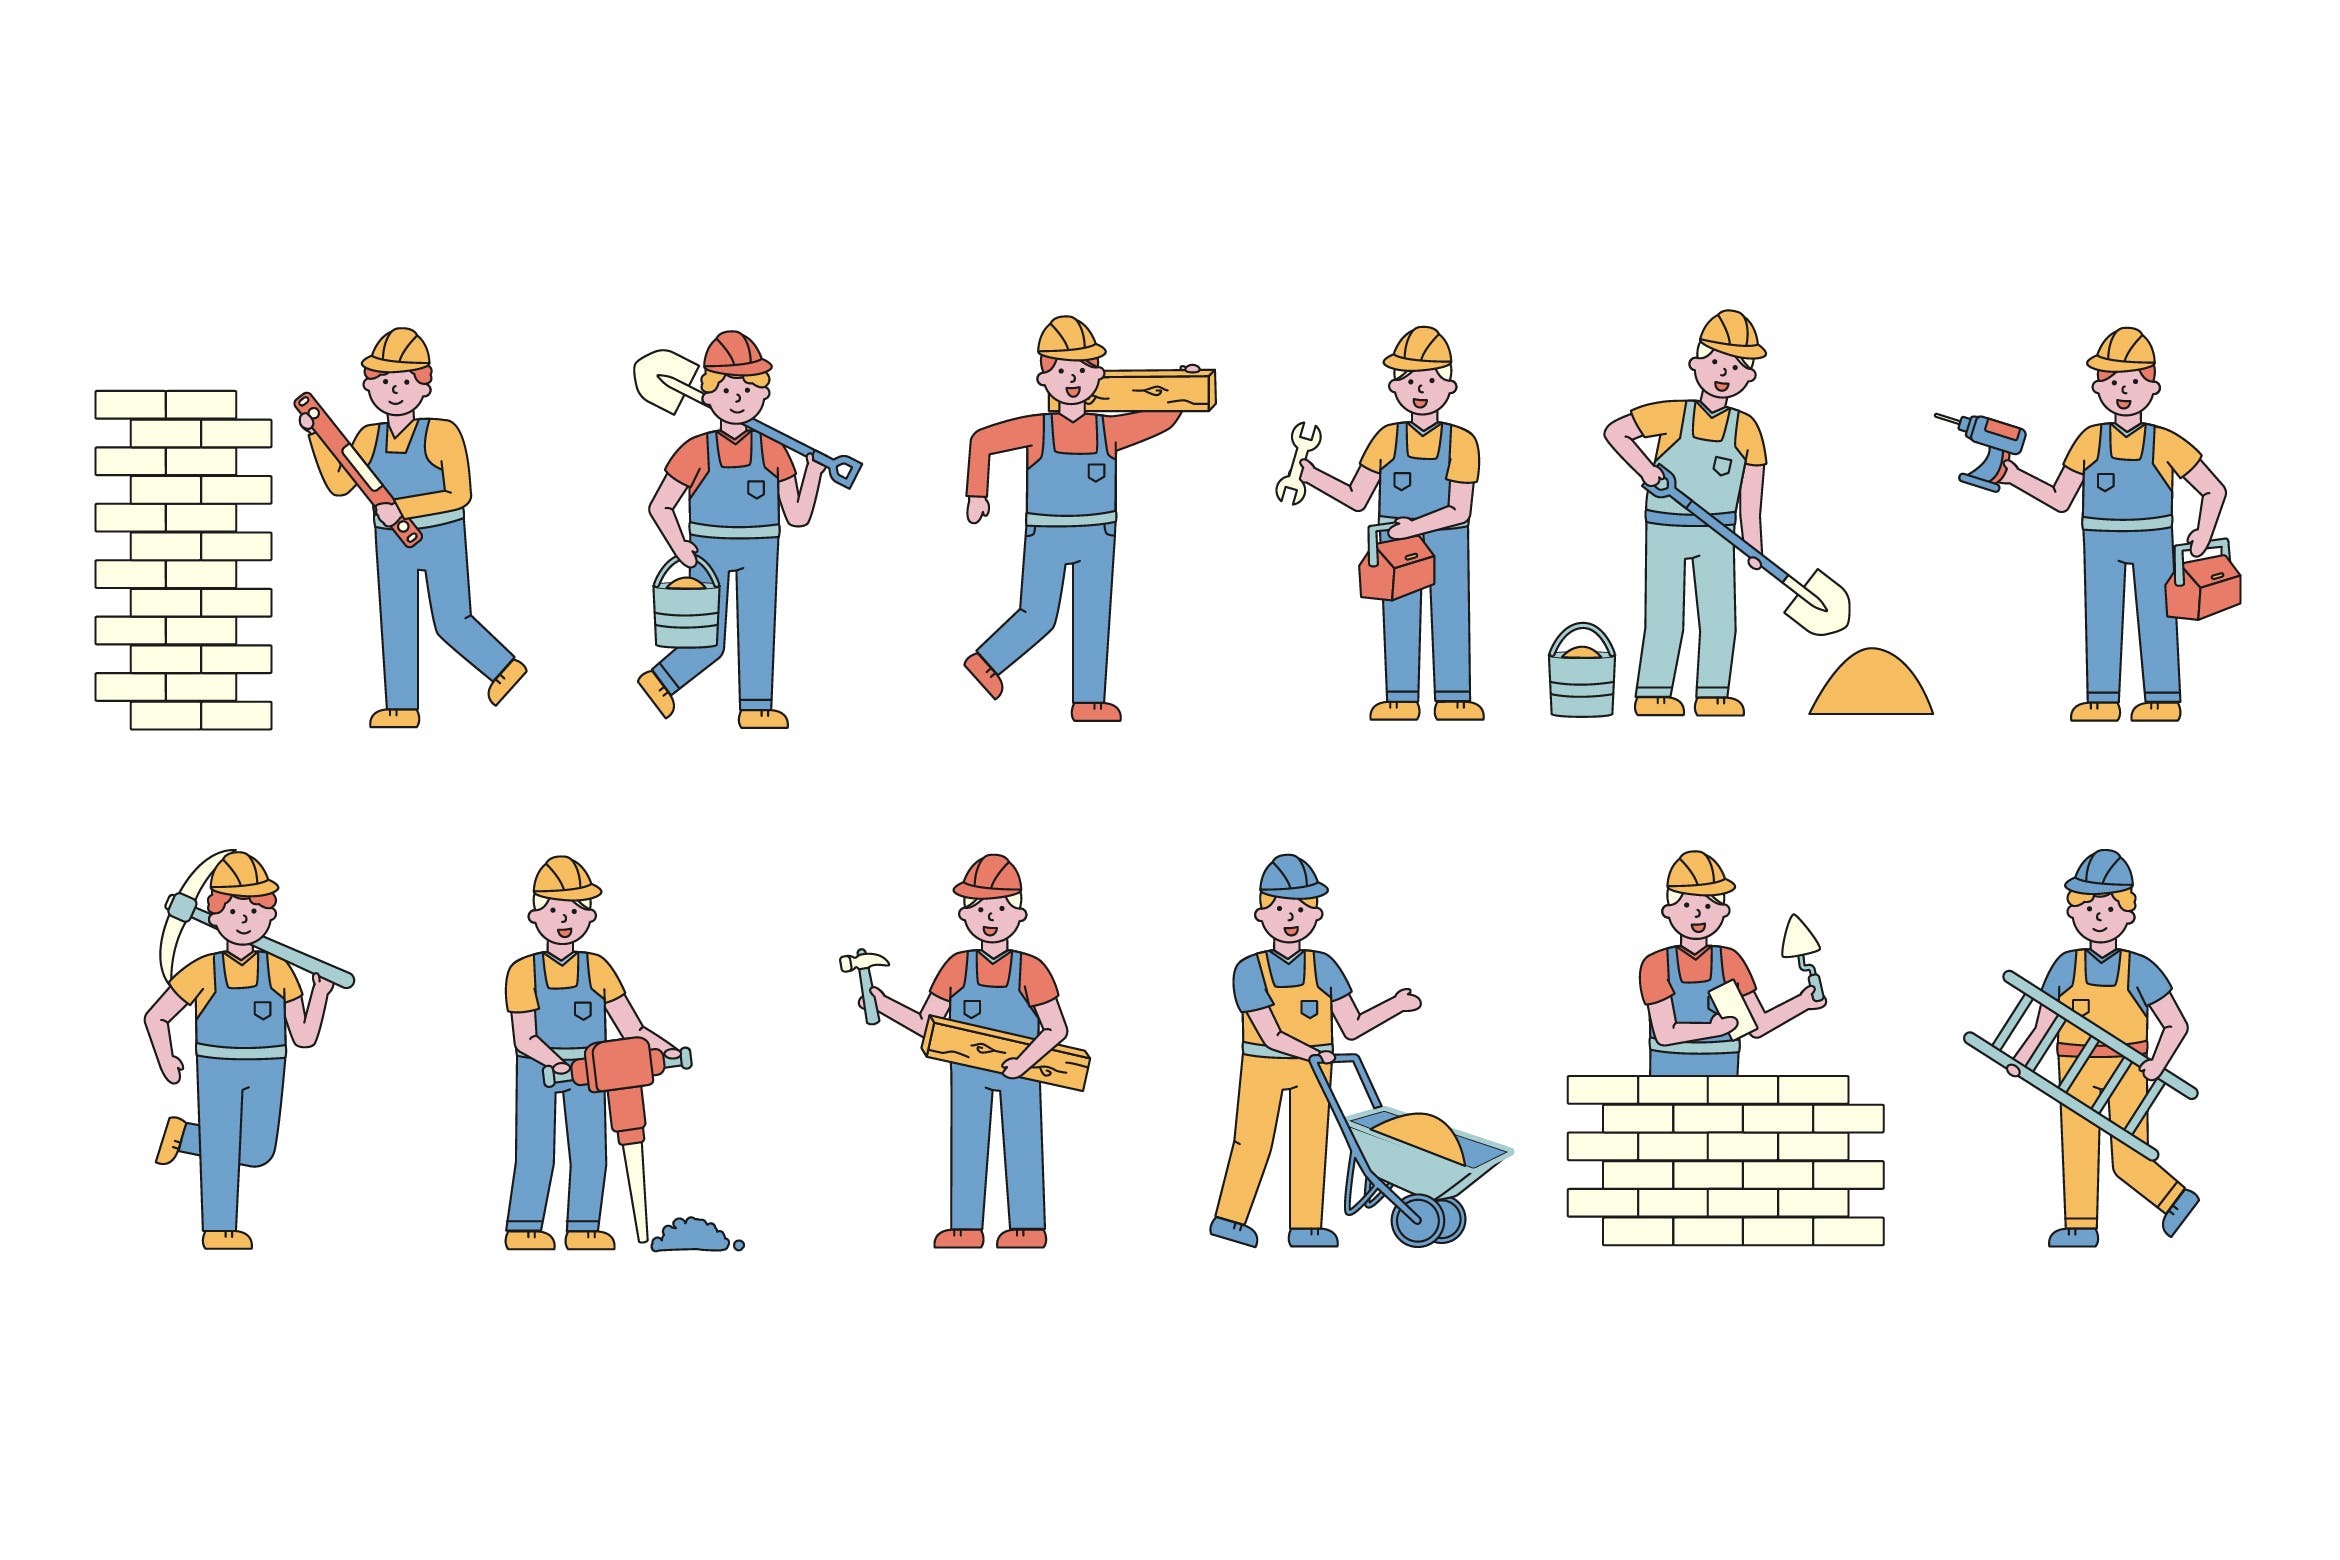 建筑工人人物形象线条艺术矢量插画第一素材精选素材 Builders Lineart People Character Collection插图